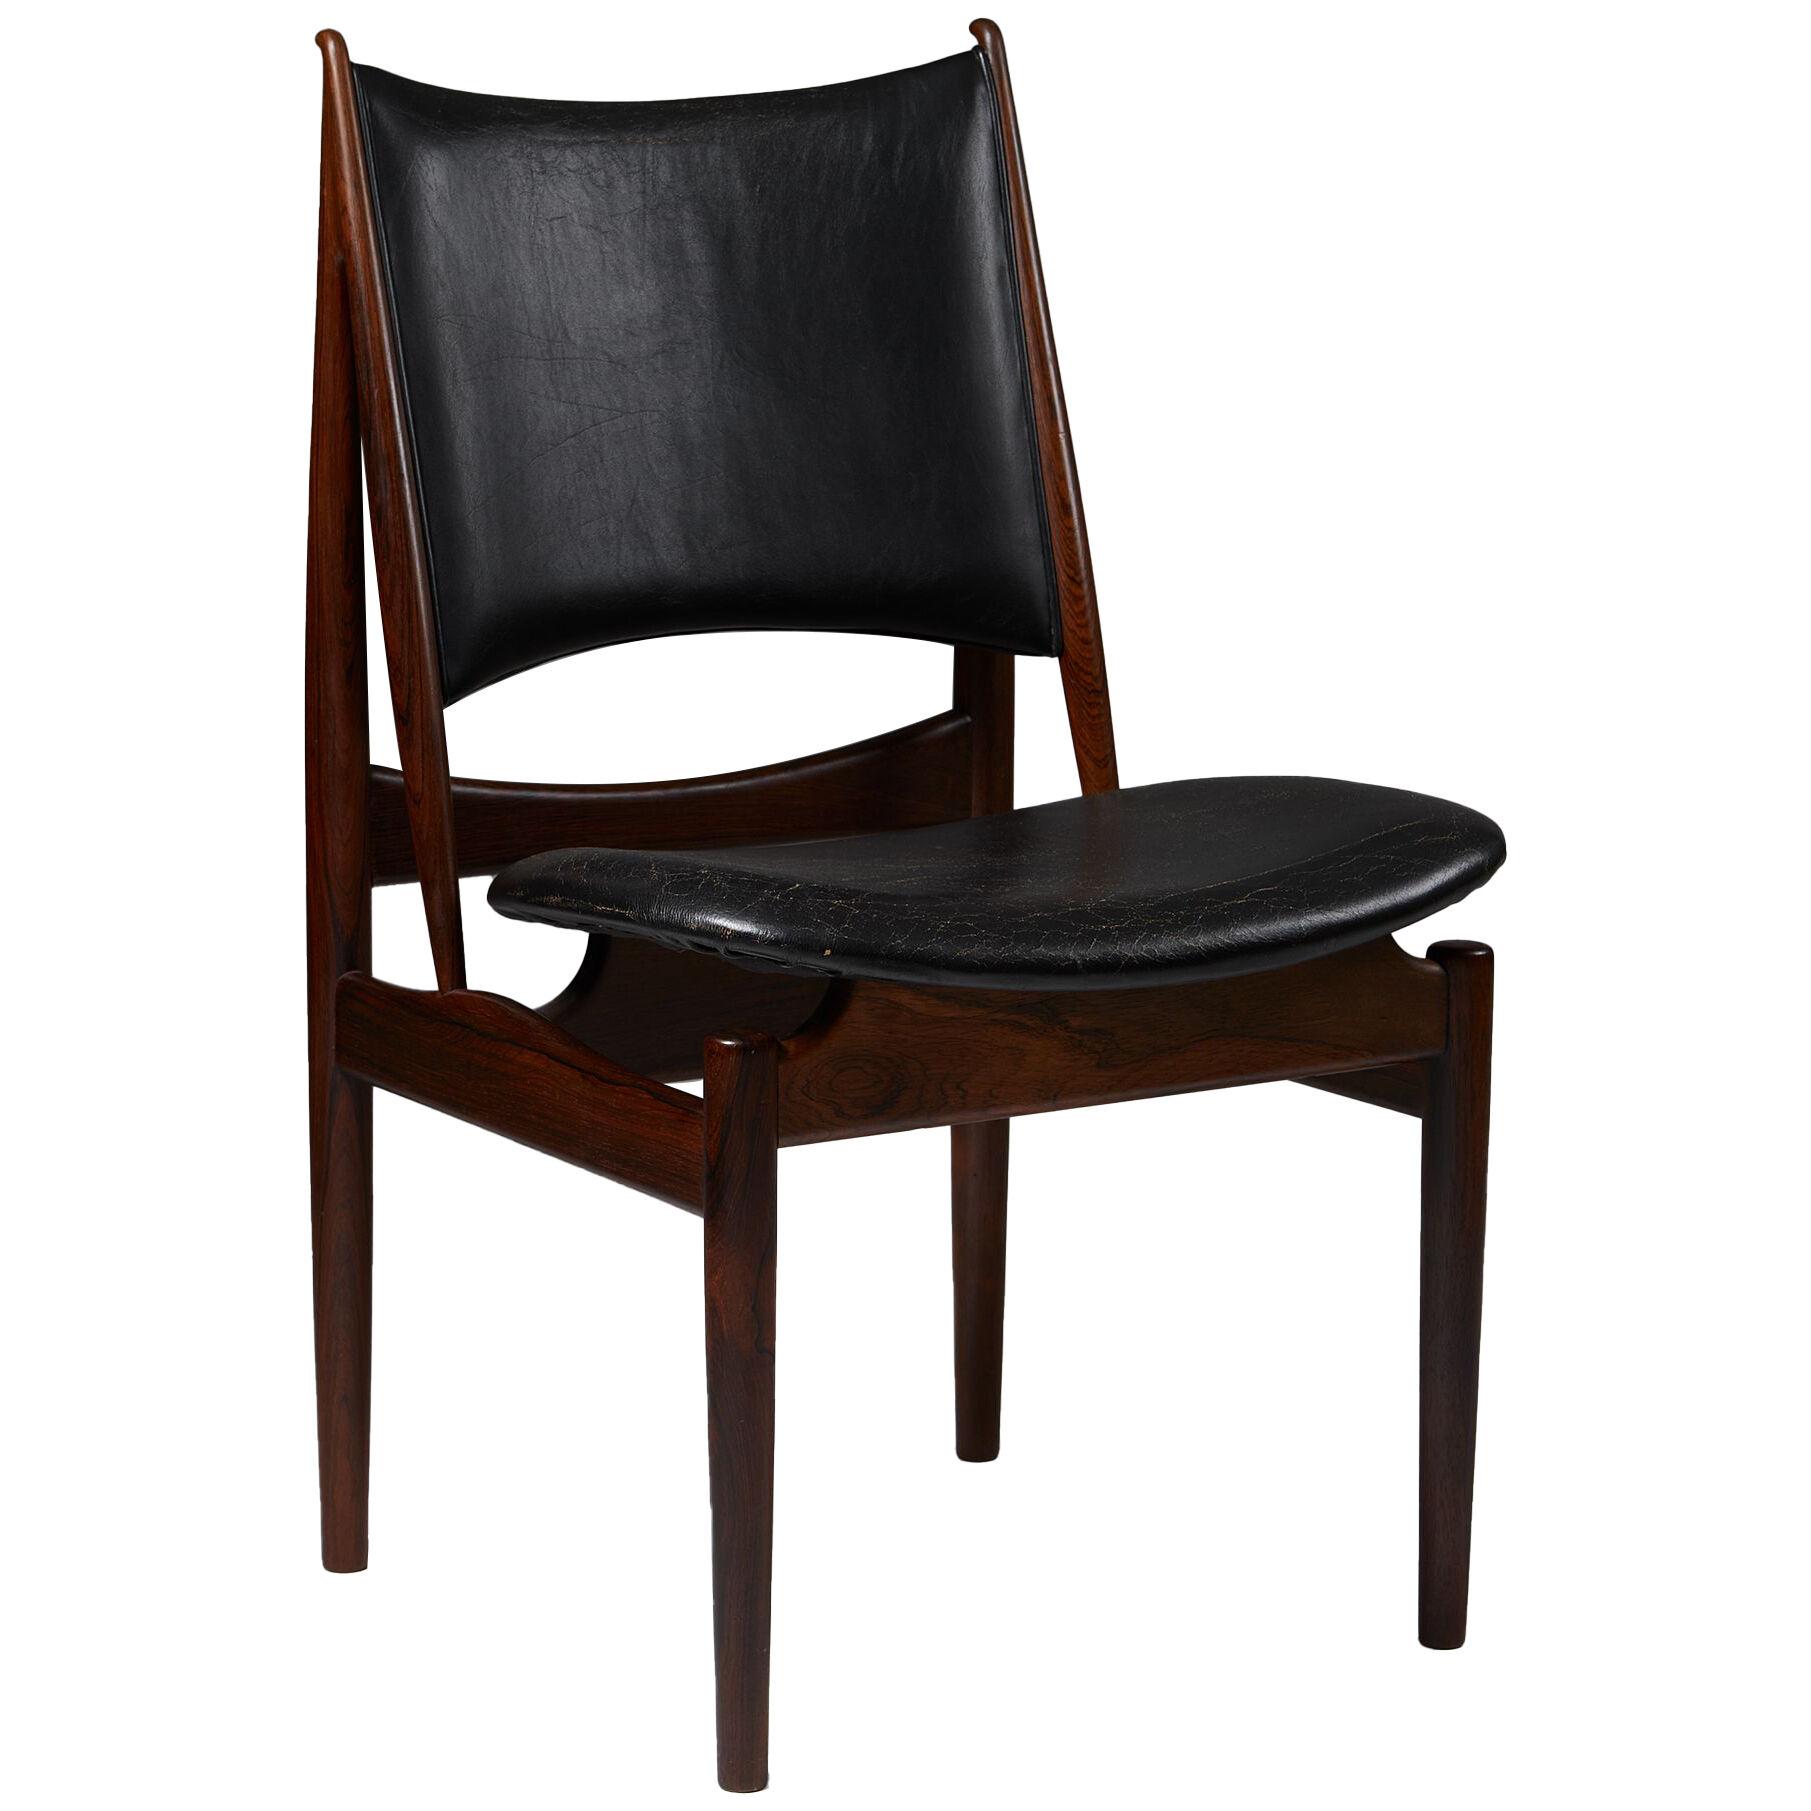 Chair “Egyptian” designed by Finn Juhl for Niels Vodder, Denmark, 1949.